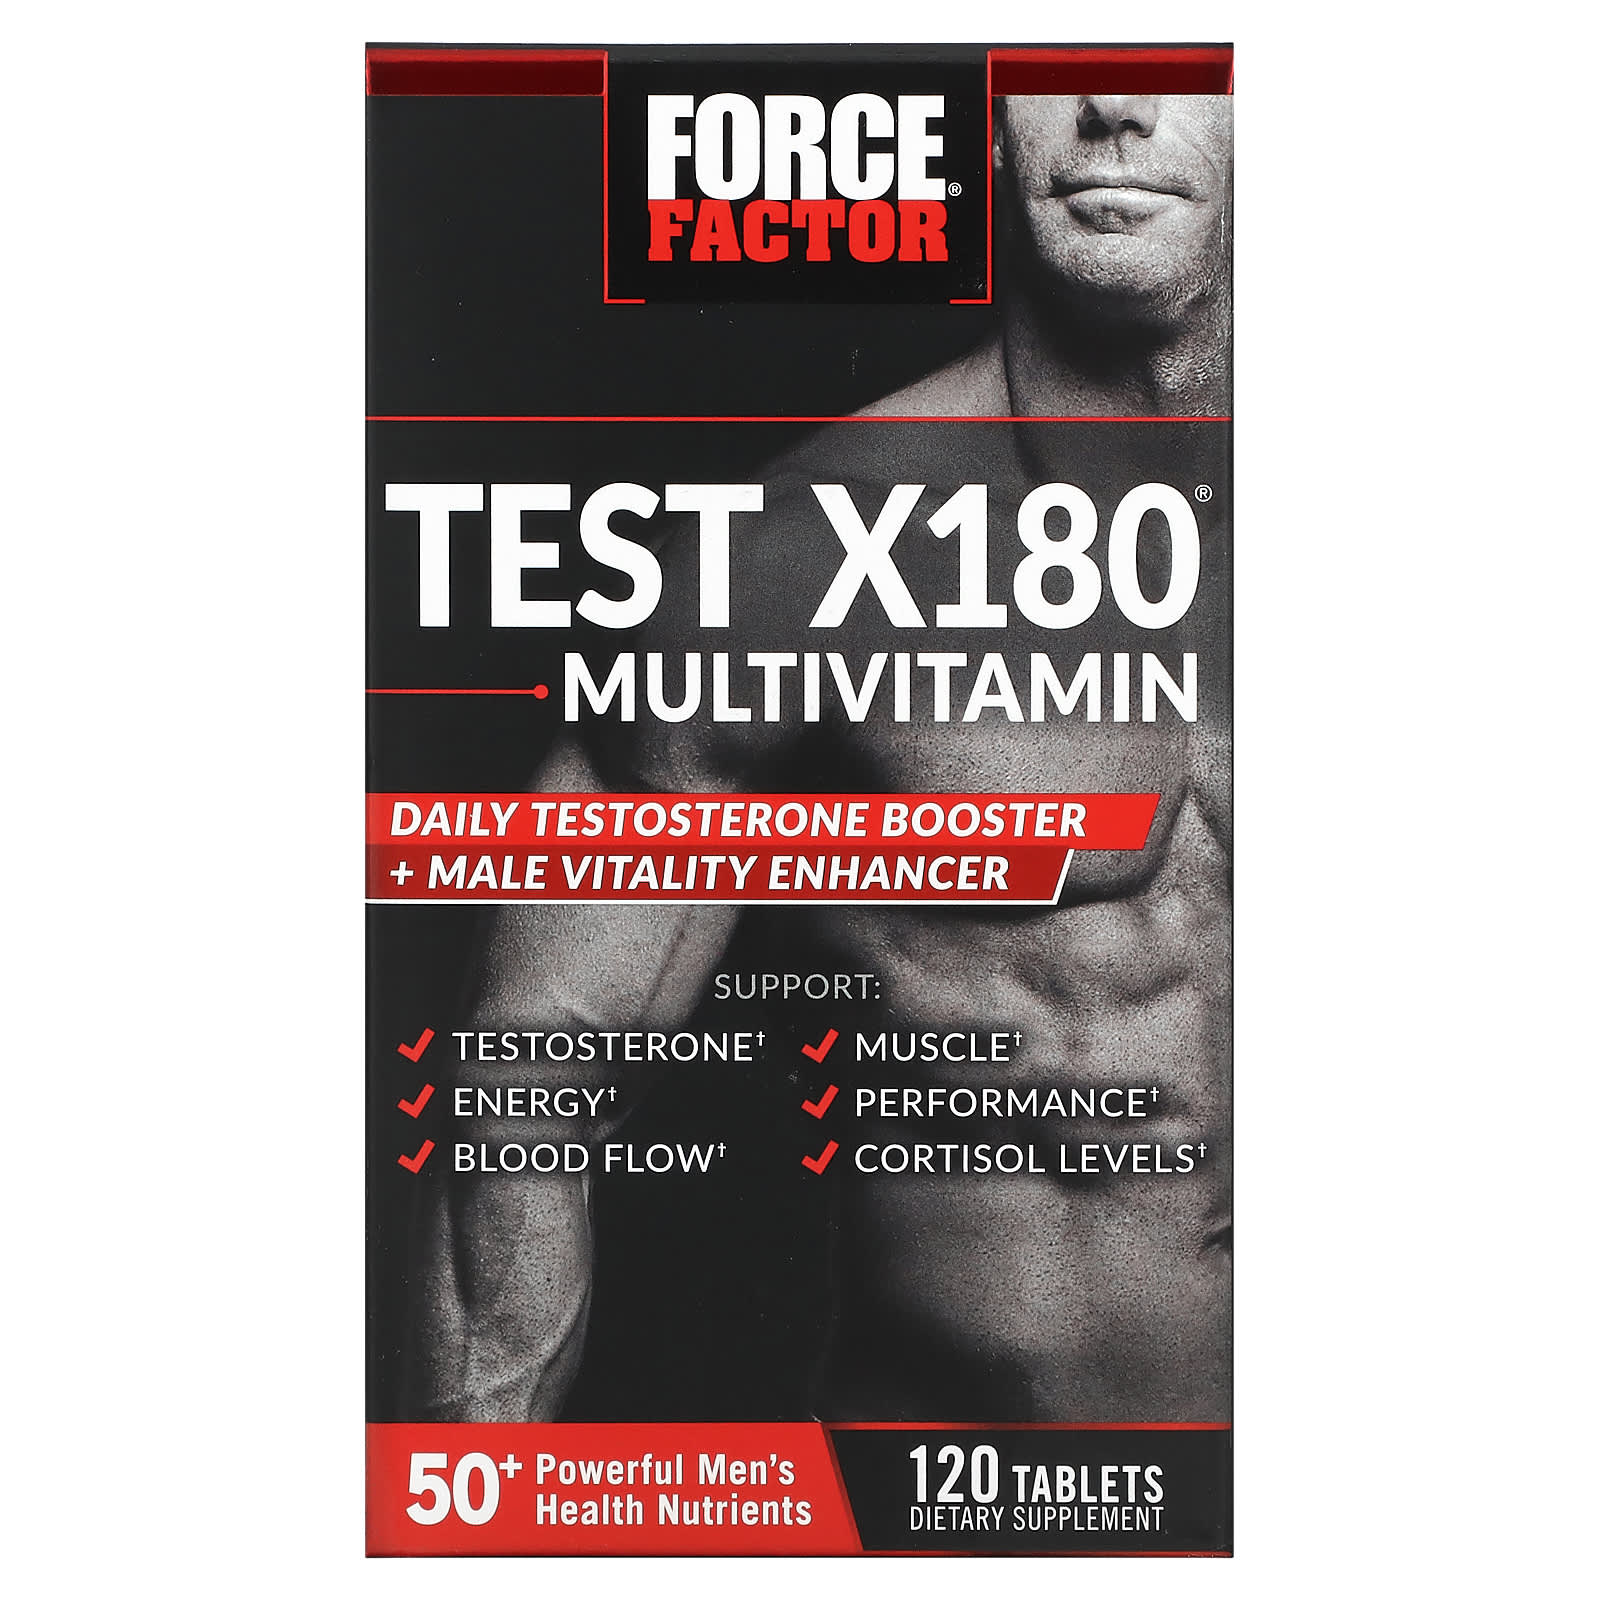 Мультивитамины и Усилитель Тестостерона Force Factor, 120 таблеток force factor score hardcore средство для повышения производительности и либидо 120 таблеток